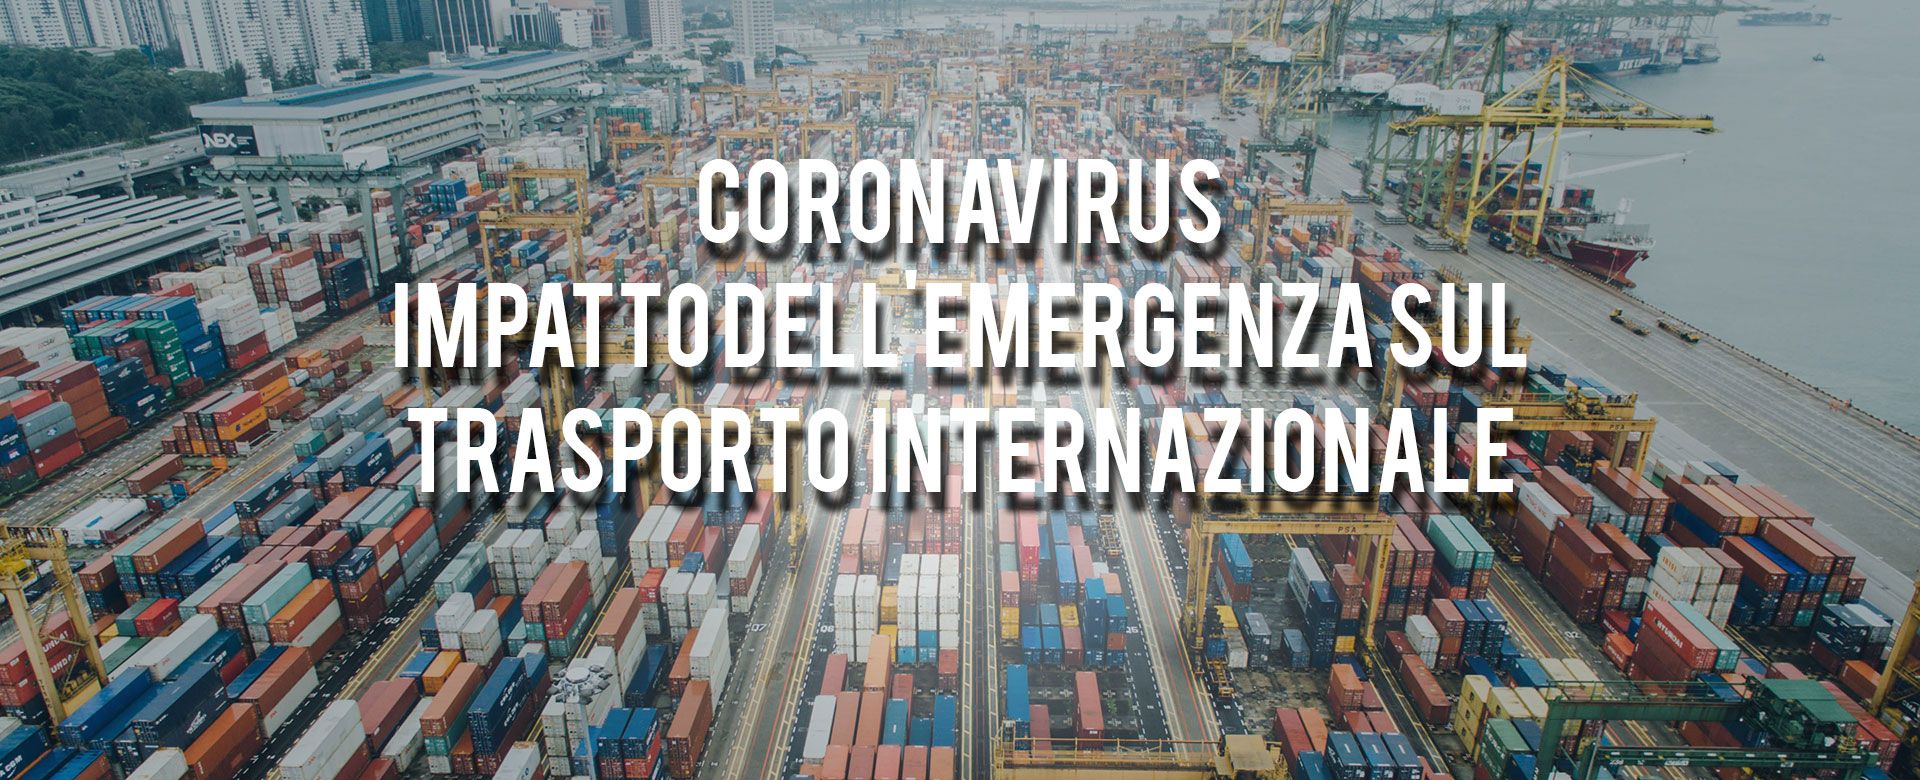 Coronavirus: riflessioni giuridiche sull'impatto dell'emergenza nel trasporto internazionale